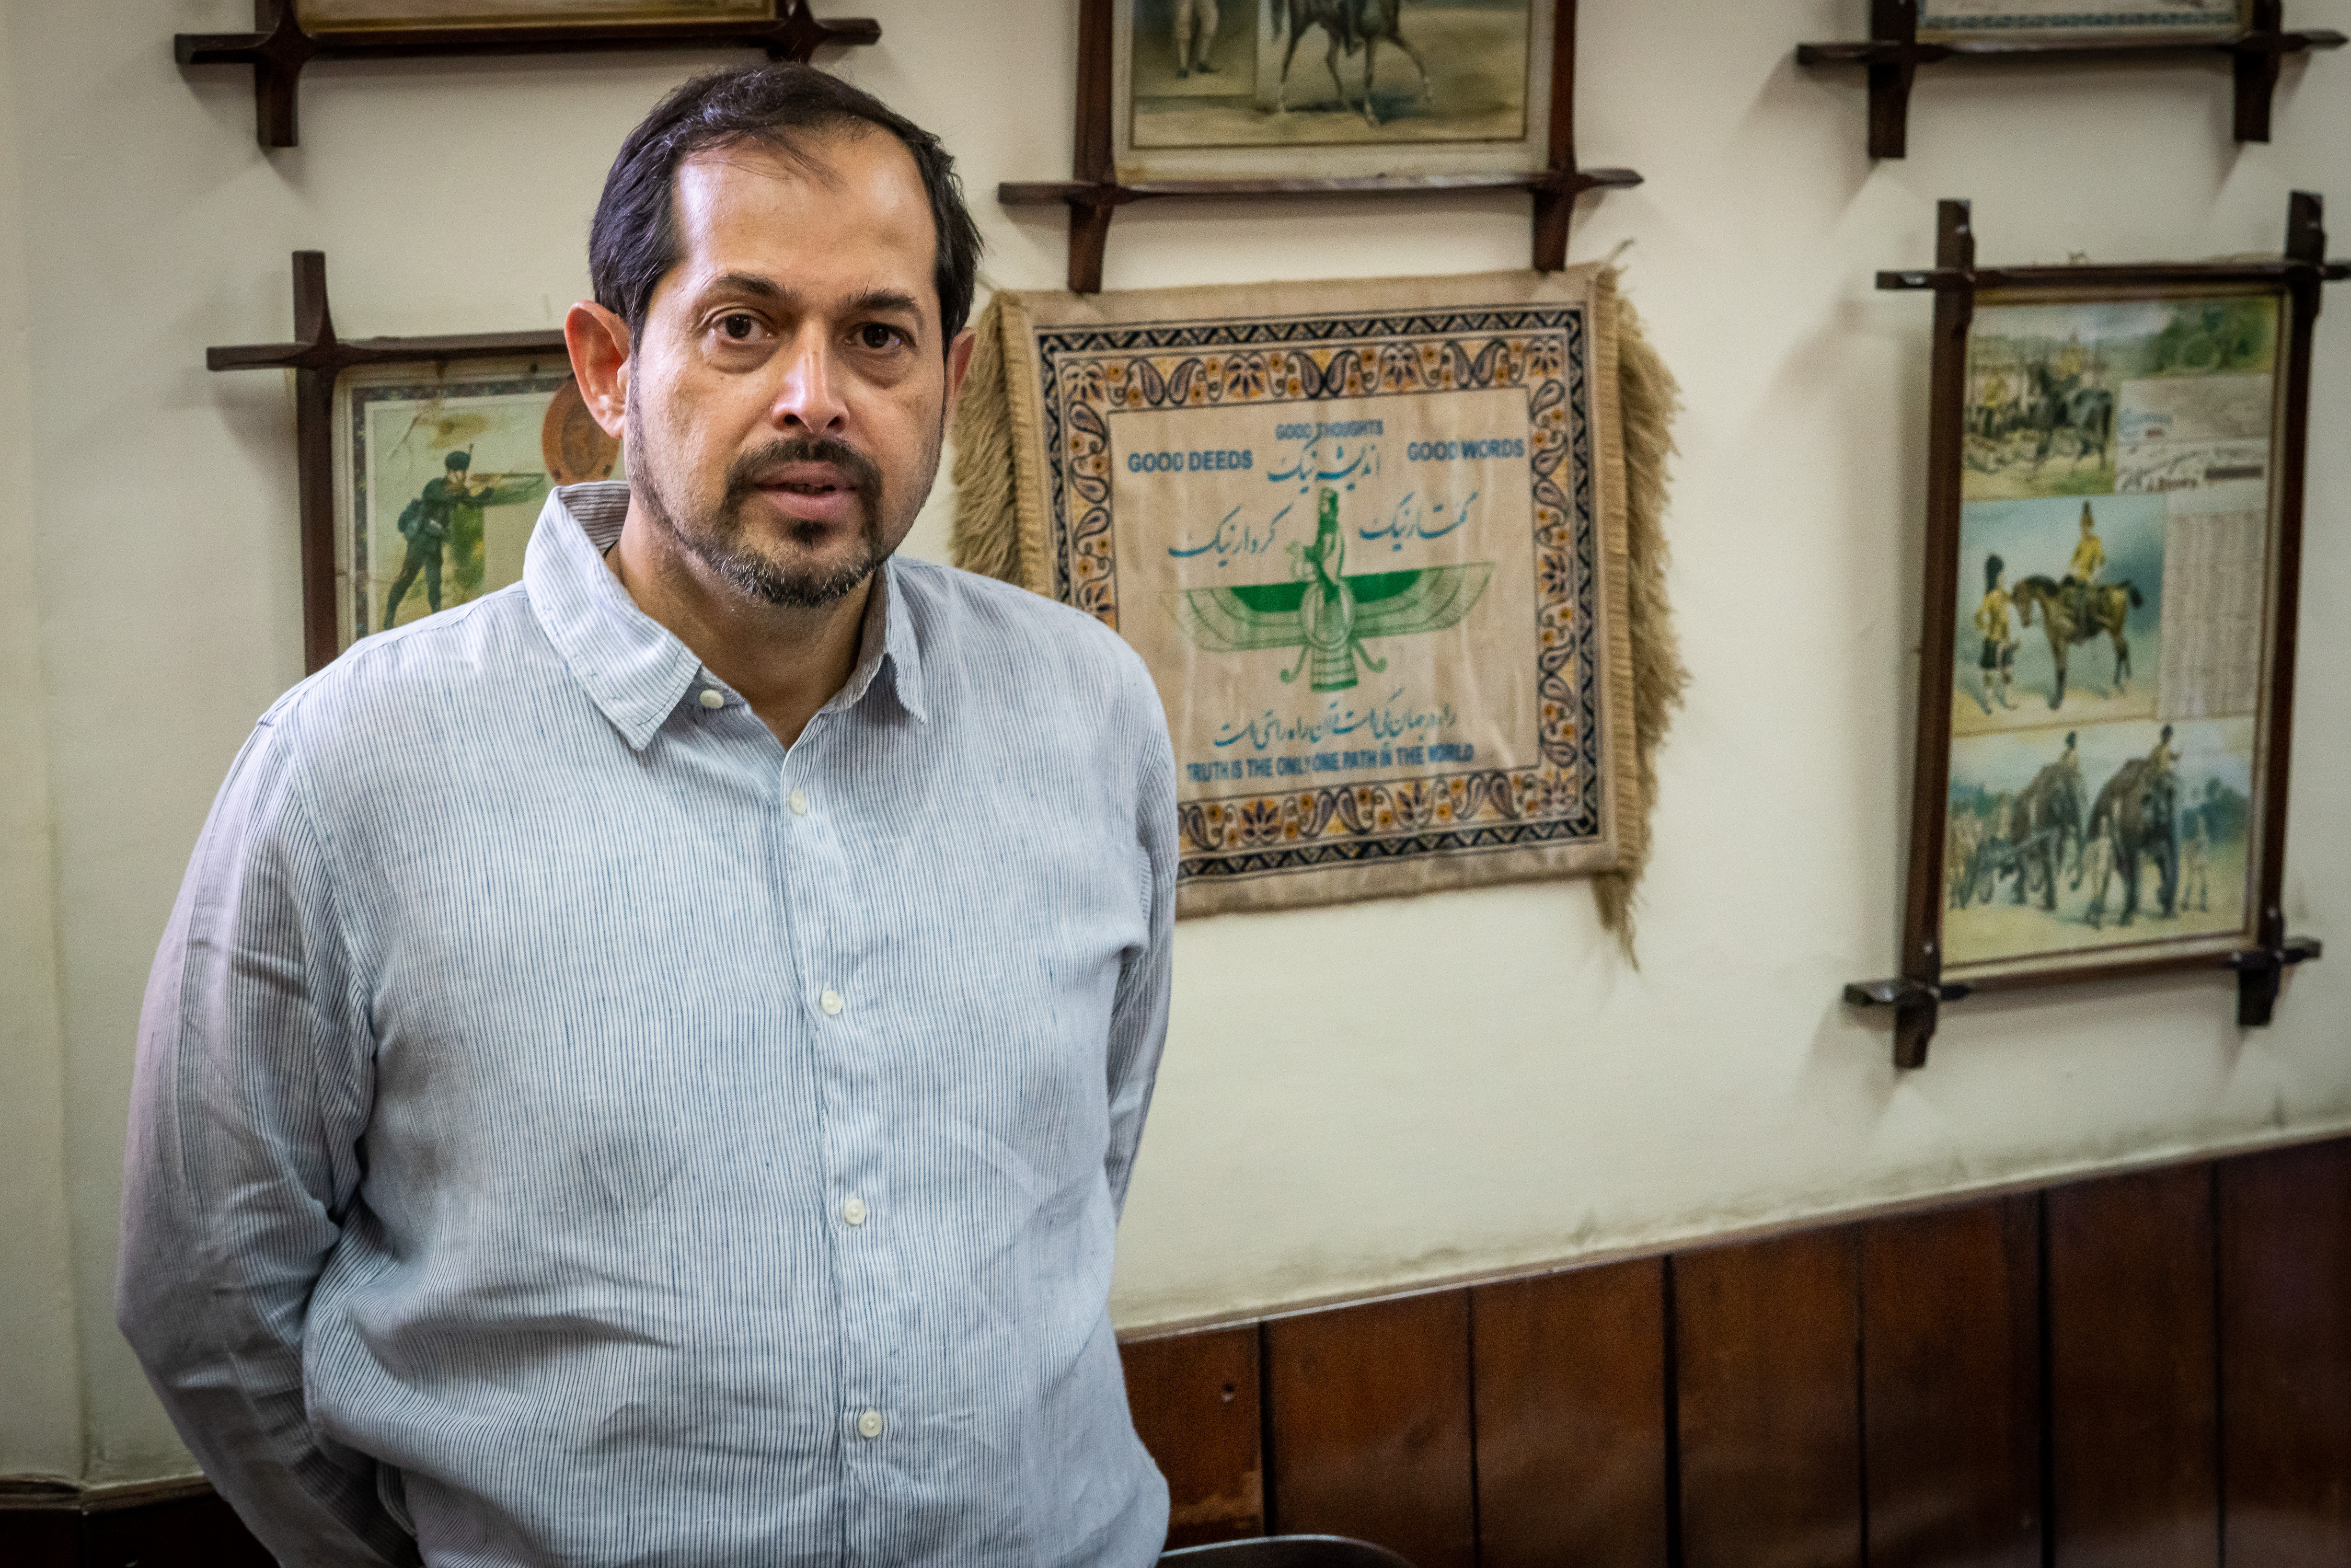 مدير مصنع بيرة مري، اسفن یار ایم بھندارا، ينتمي إلى أقلية البارسيين غير المسلمة في باكستان.  Foto: Philipp Breu